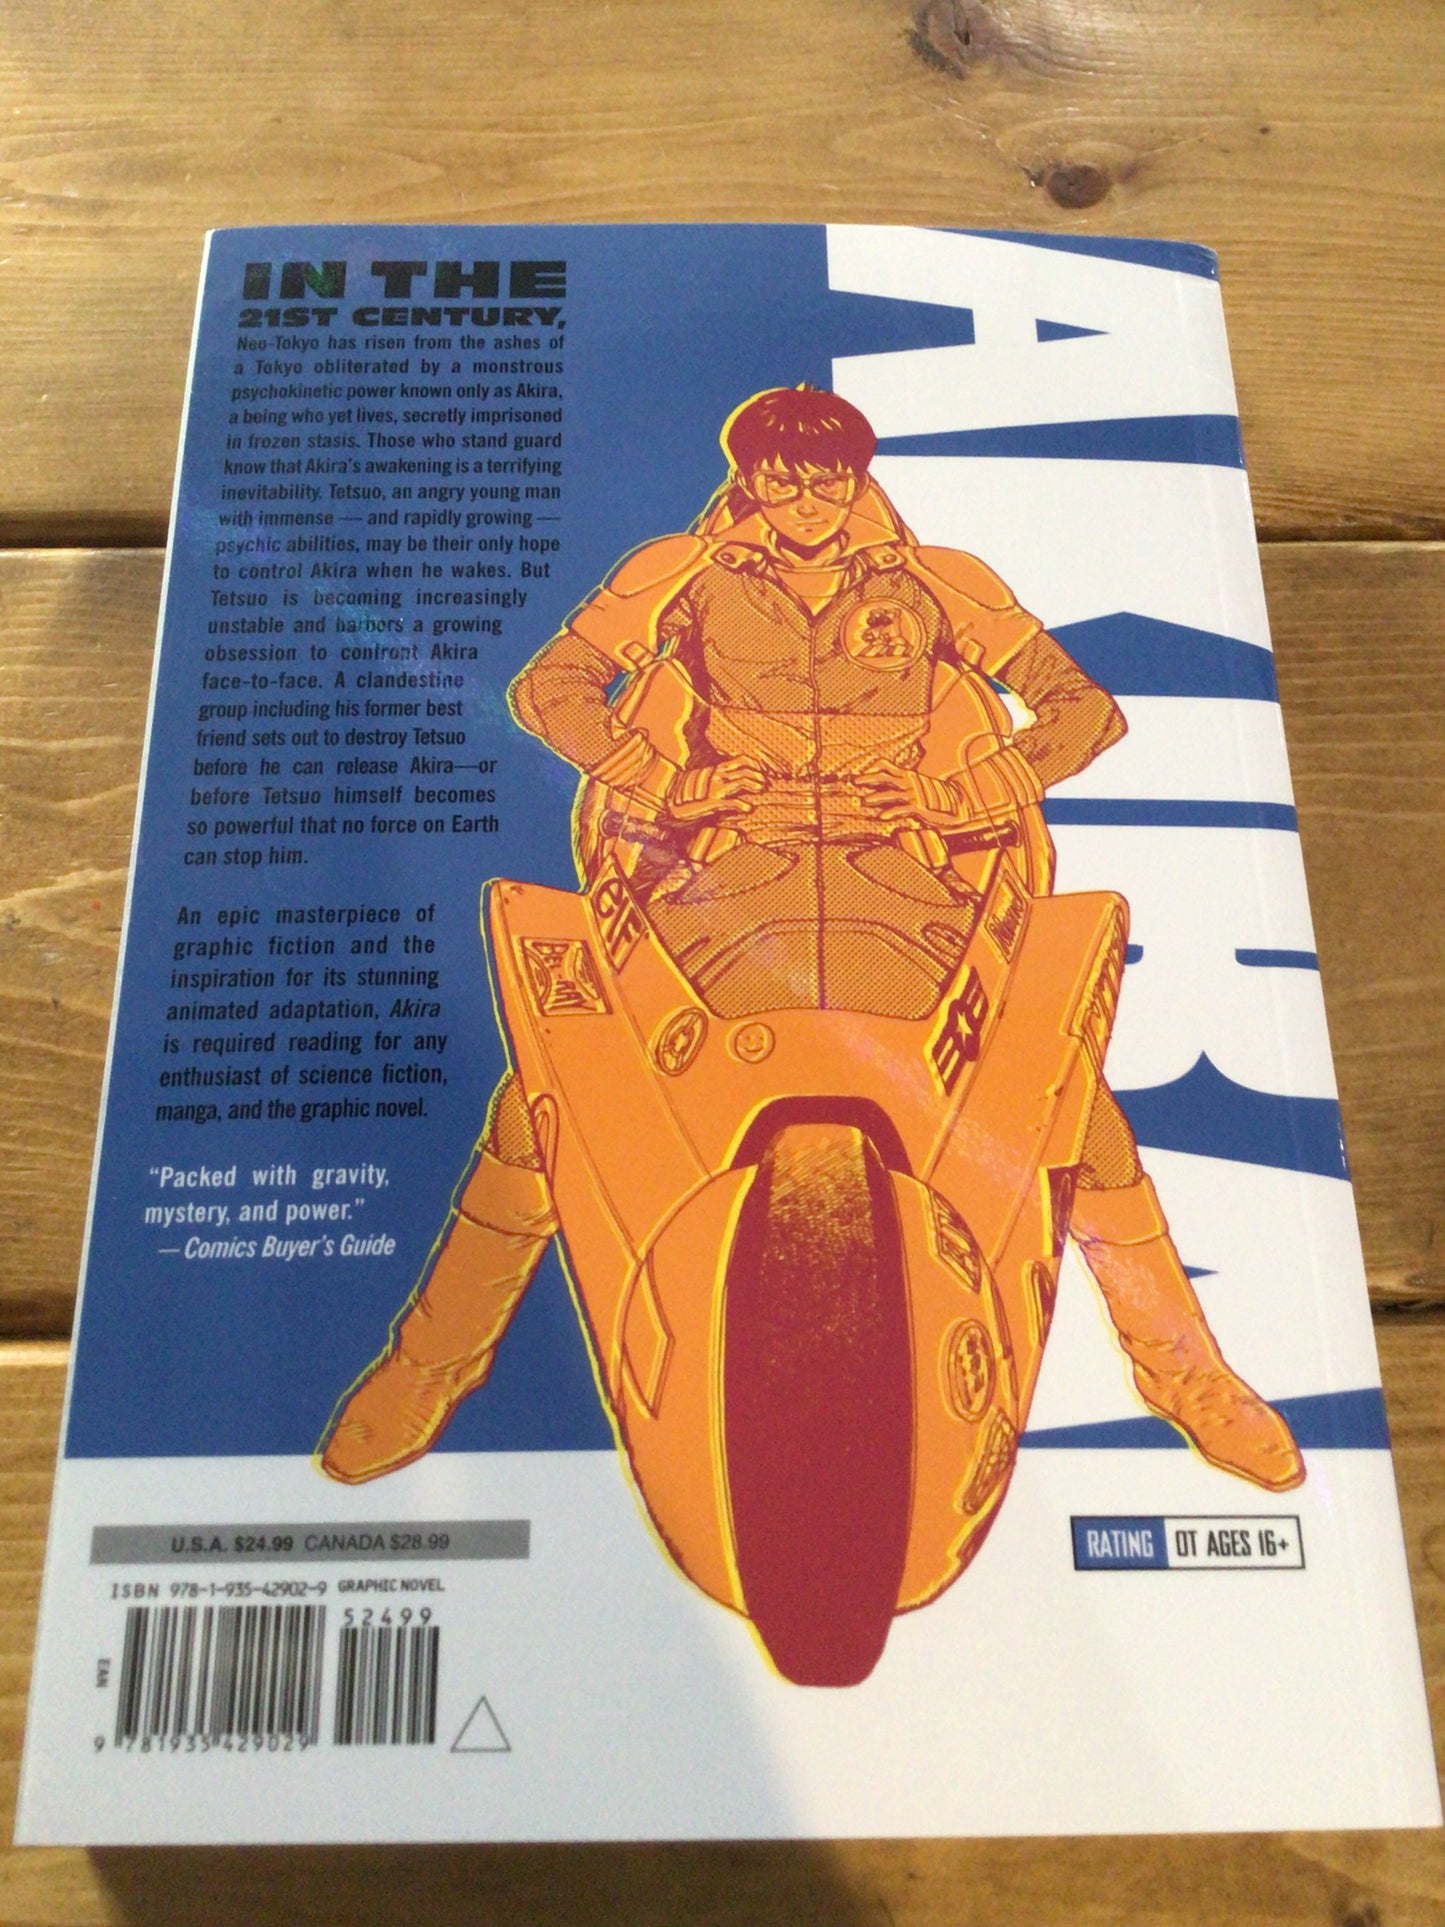 AKIRA vol. 2 graphic novel